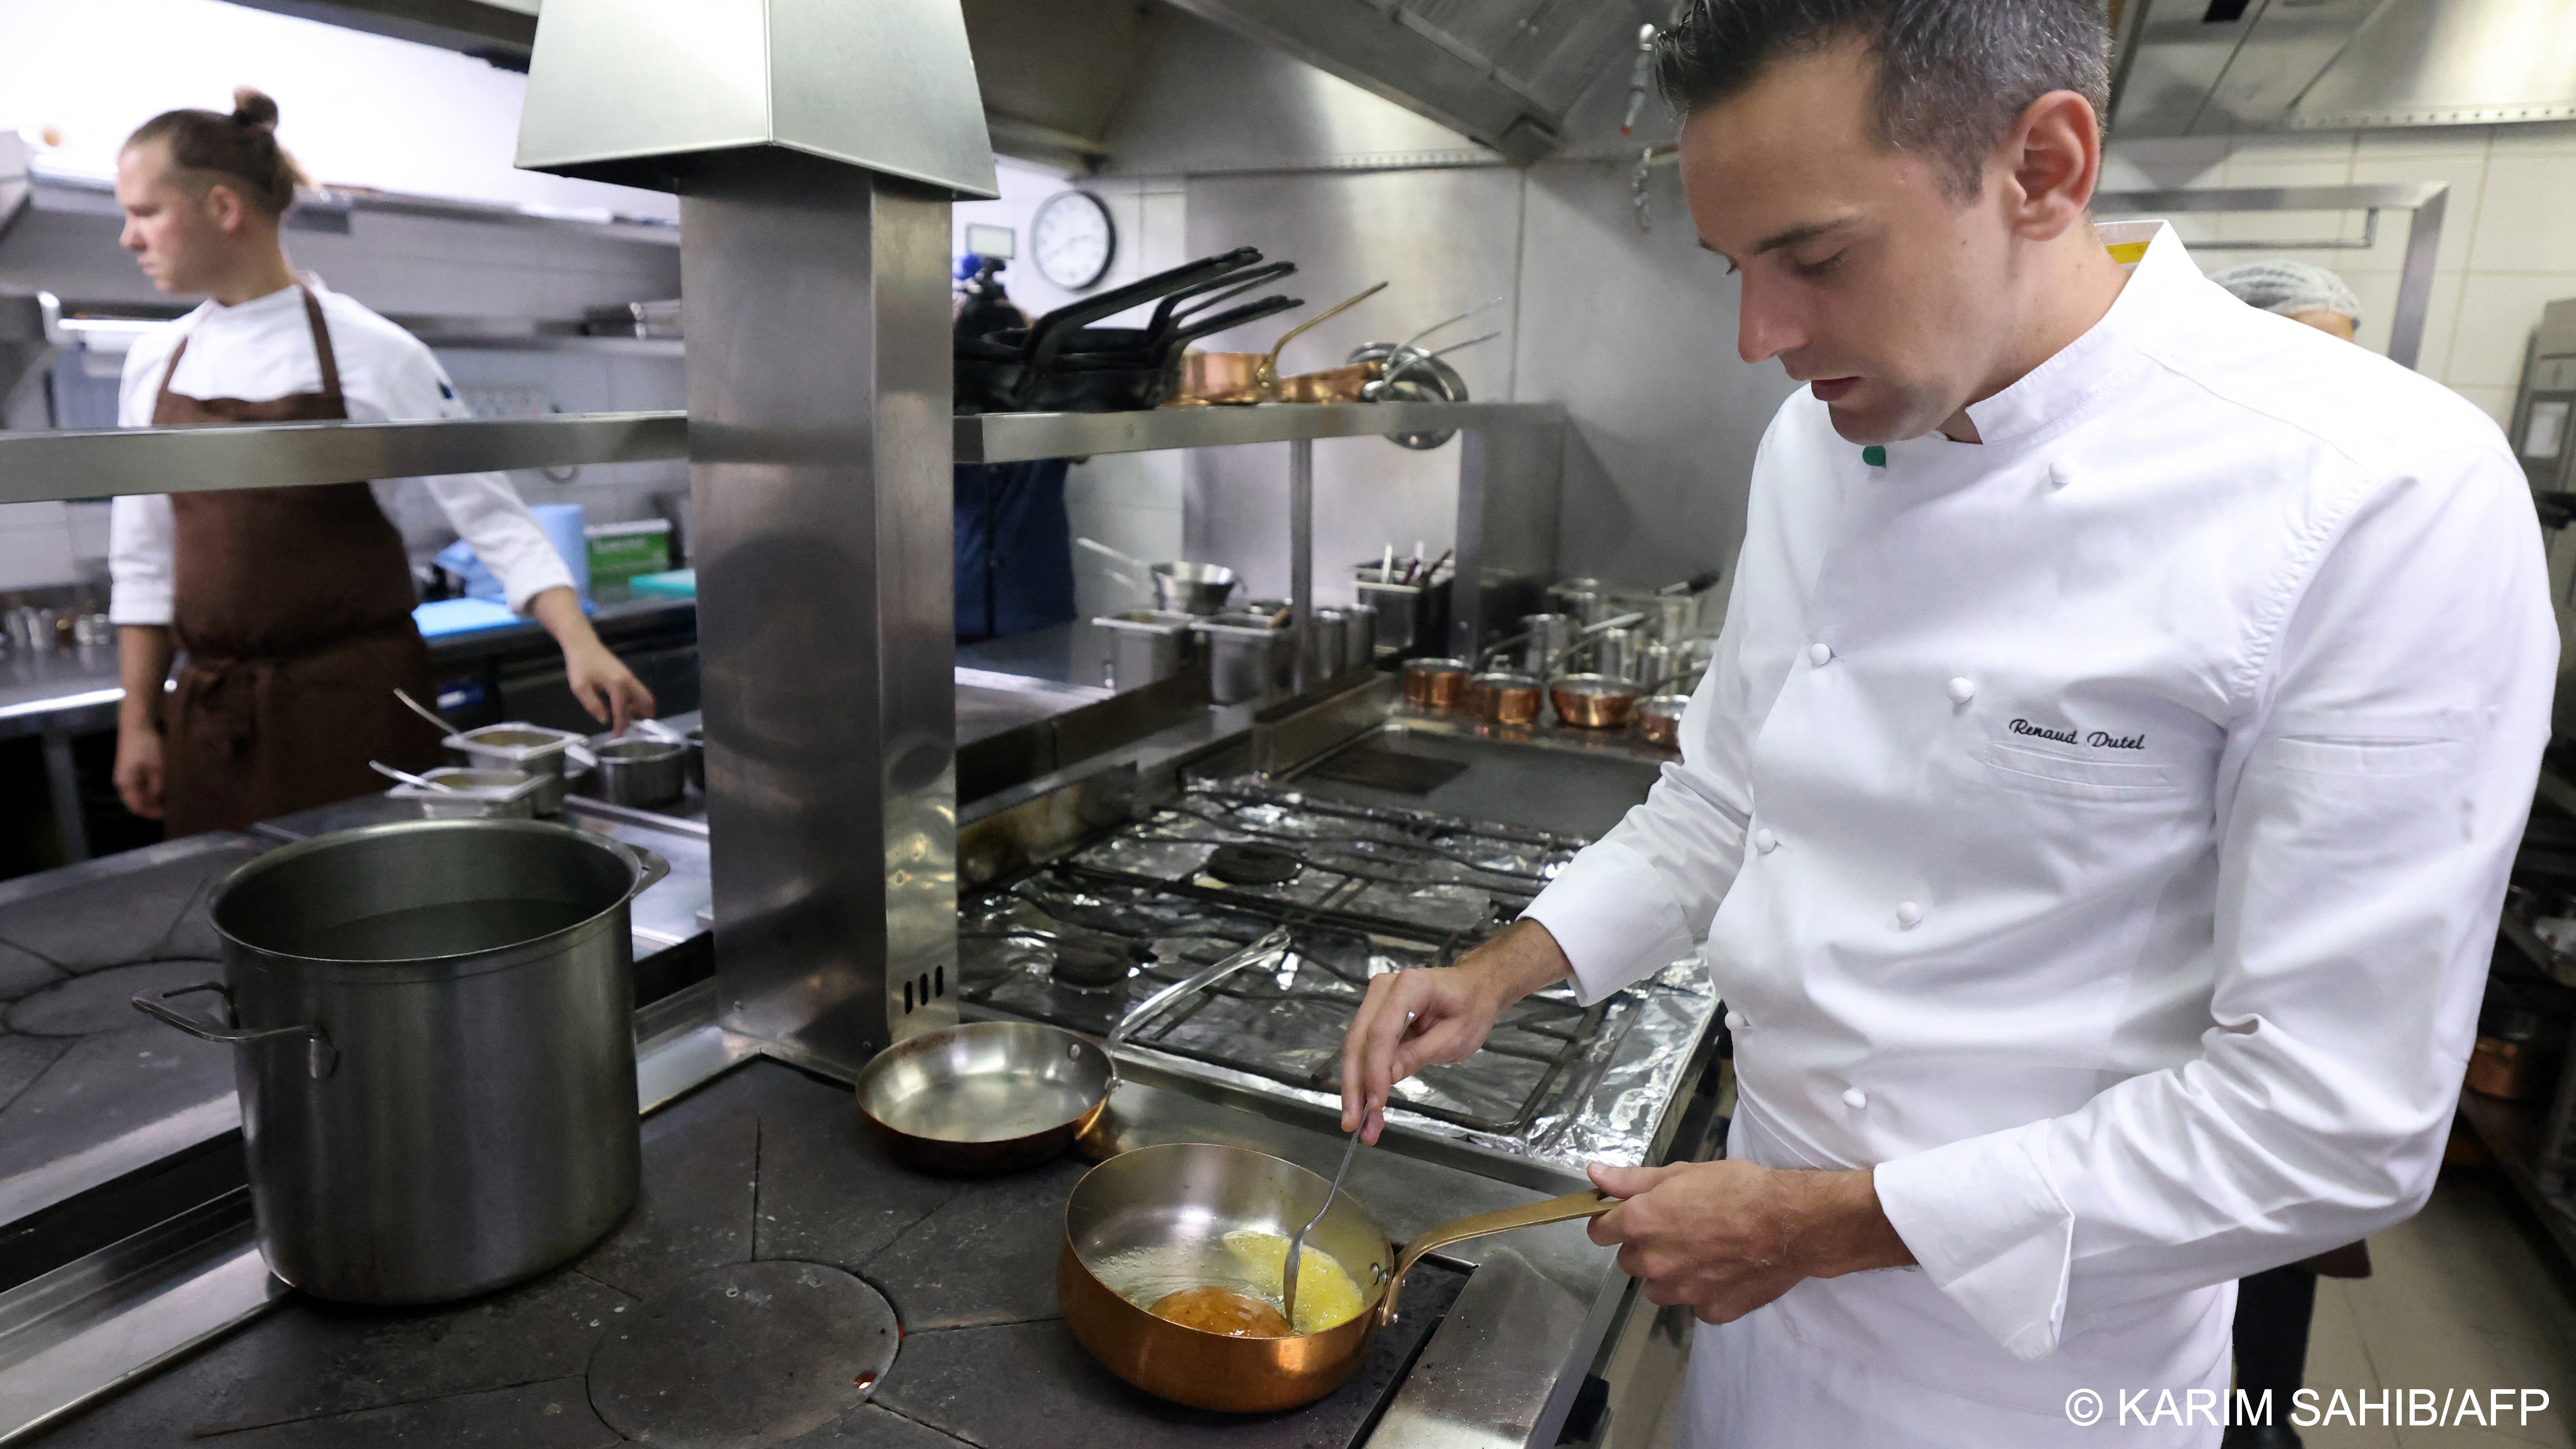 Chef working in a restaurant kitchen (image: Karim SAHIB/AFP) 